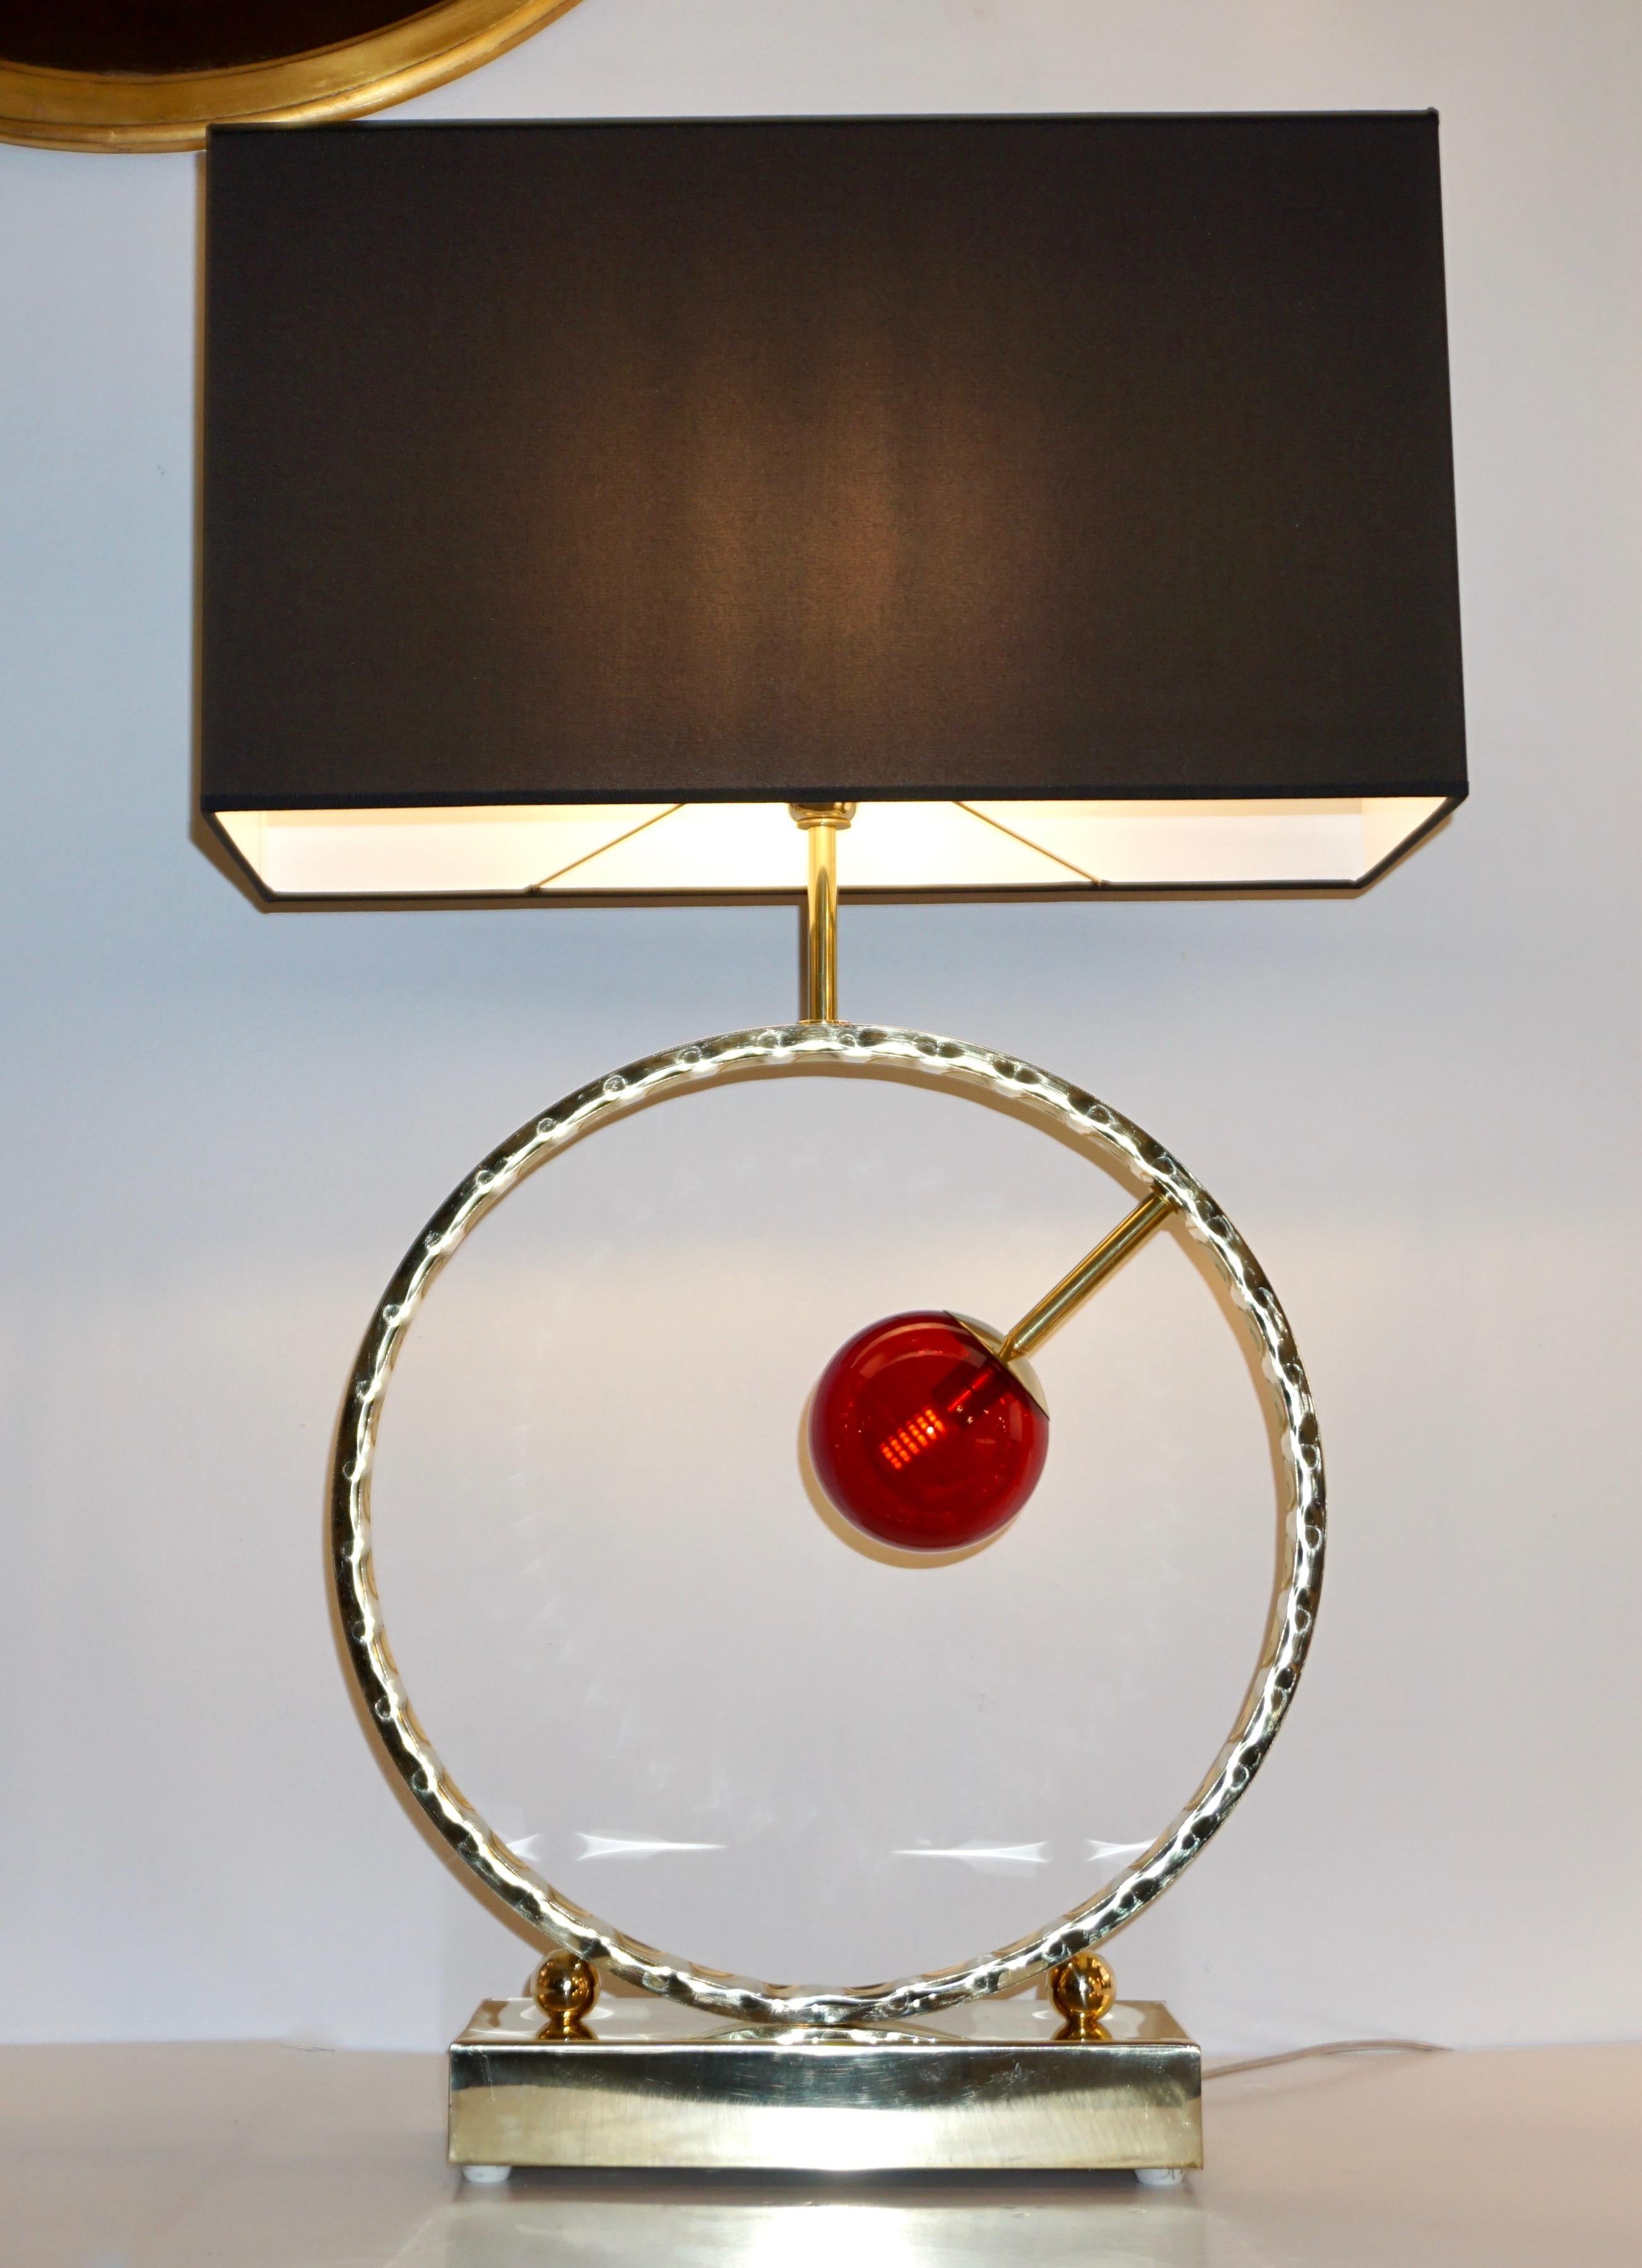 Une paire de lampes de table hautes très décoratives de grande taille, entièrement fabriquées à la main en Italie, avec un design géométrique séduisant, le corps consistant en un cercle ouvert en laiton martelé à la main contenant sur un côté un